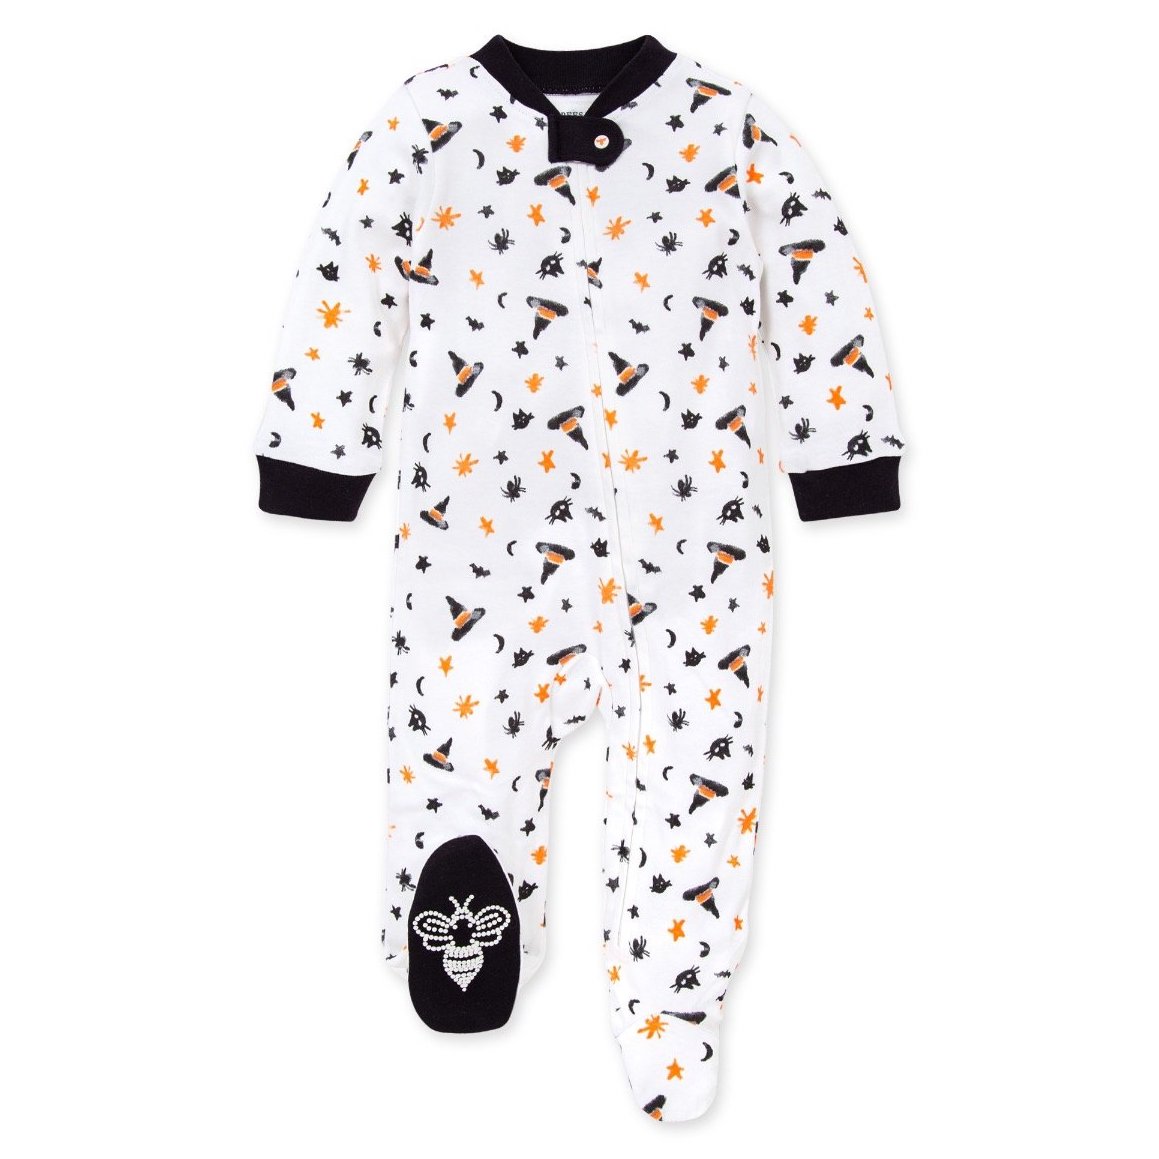 Baby Halloween Pajamas from Burt's Bees Baby